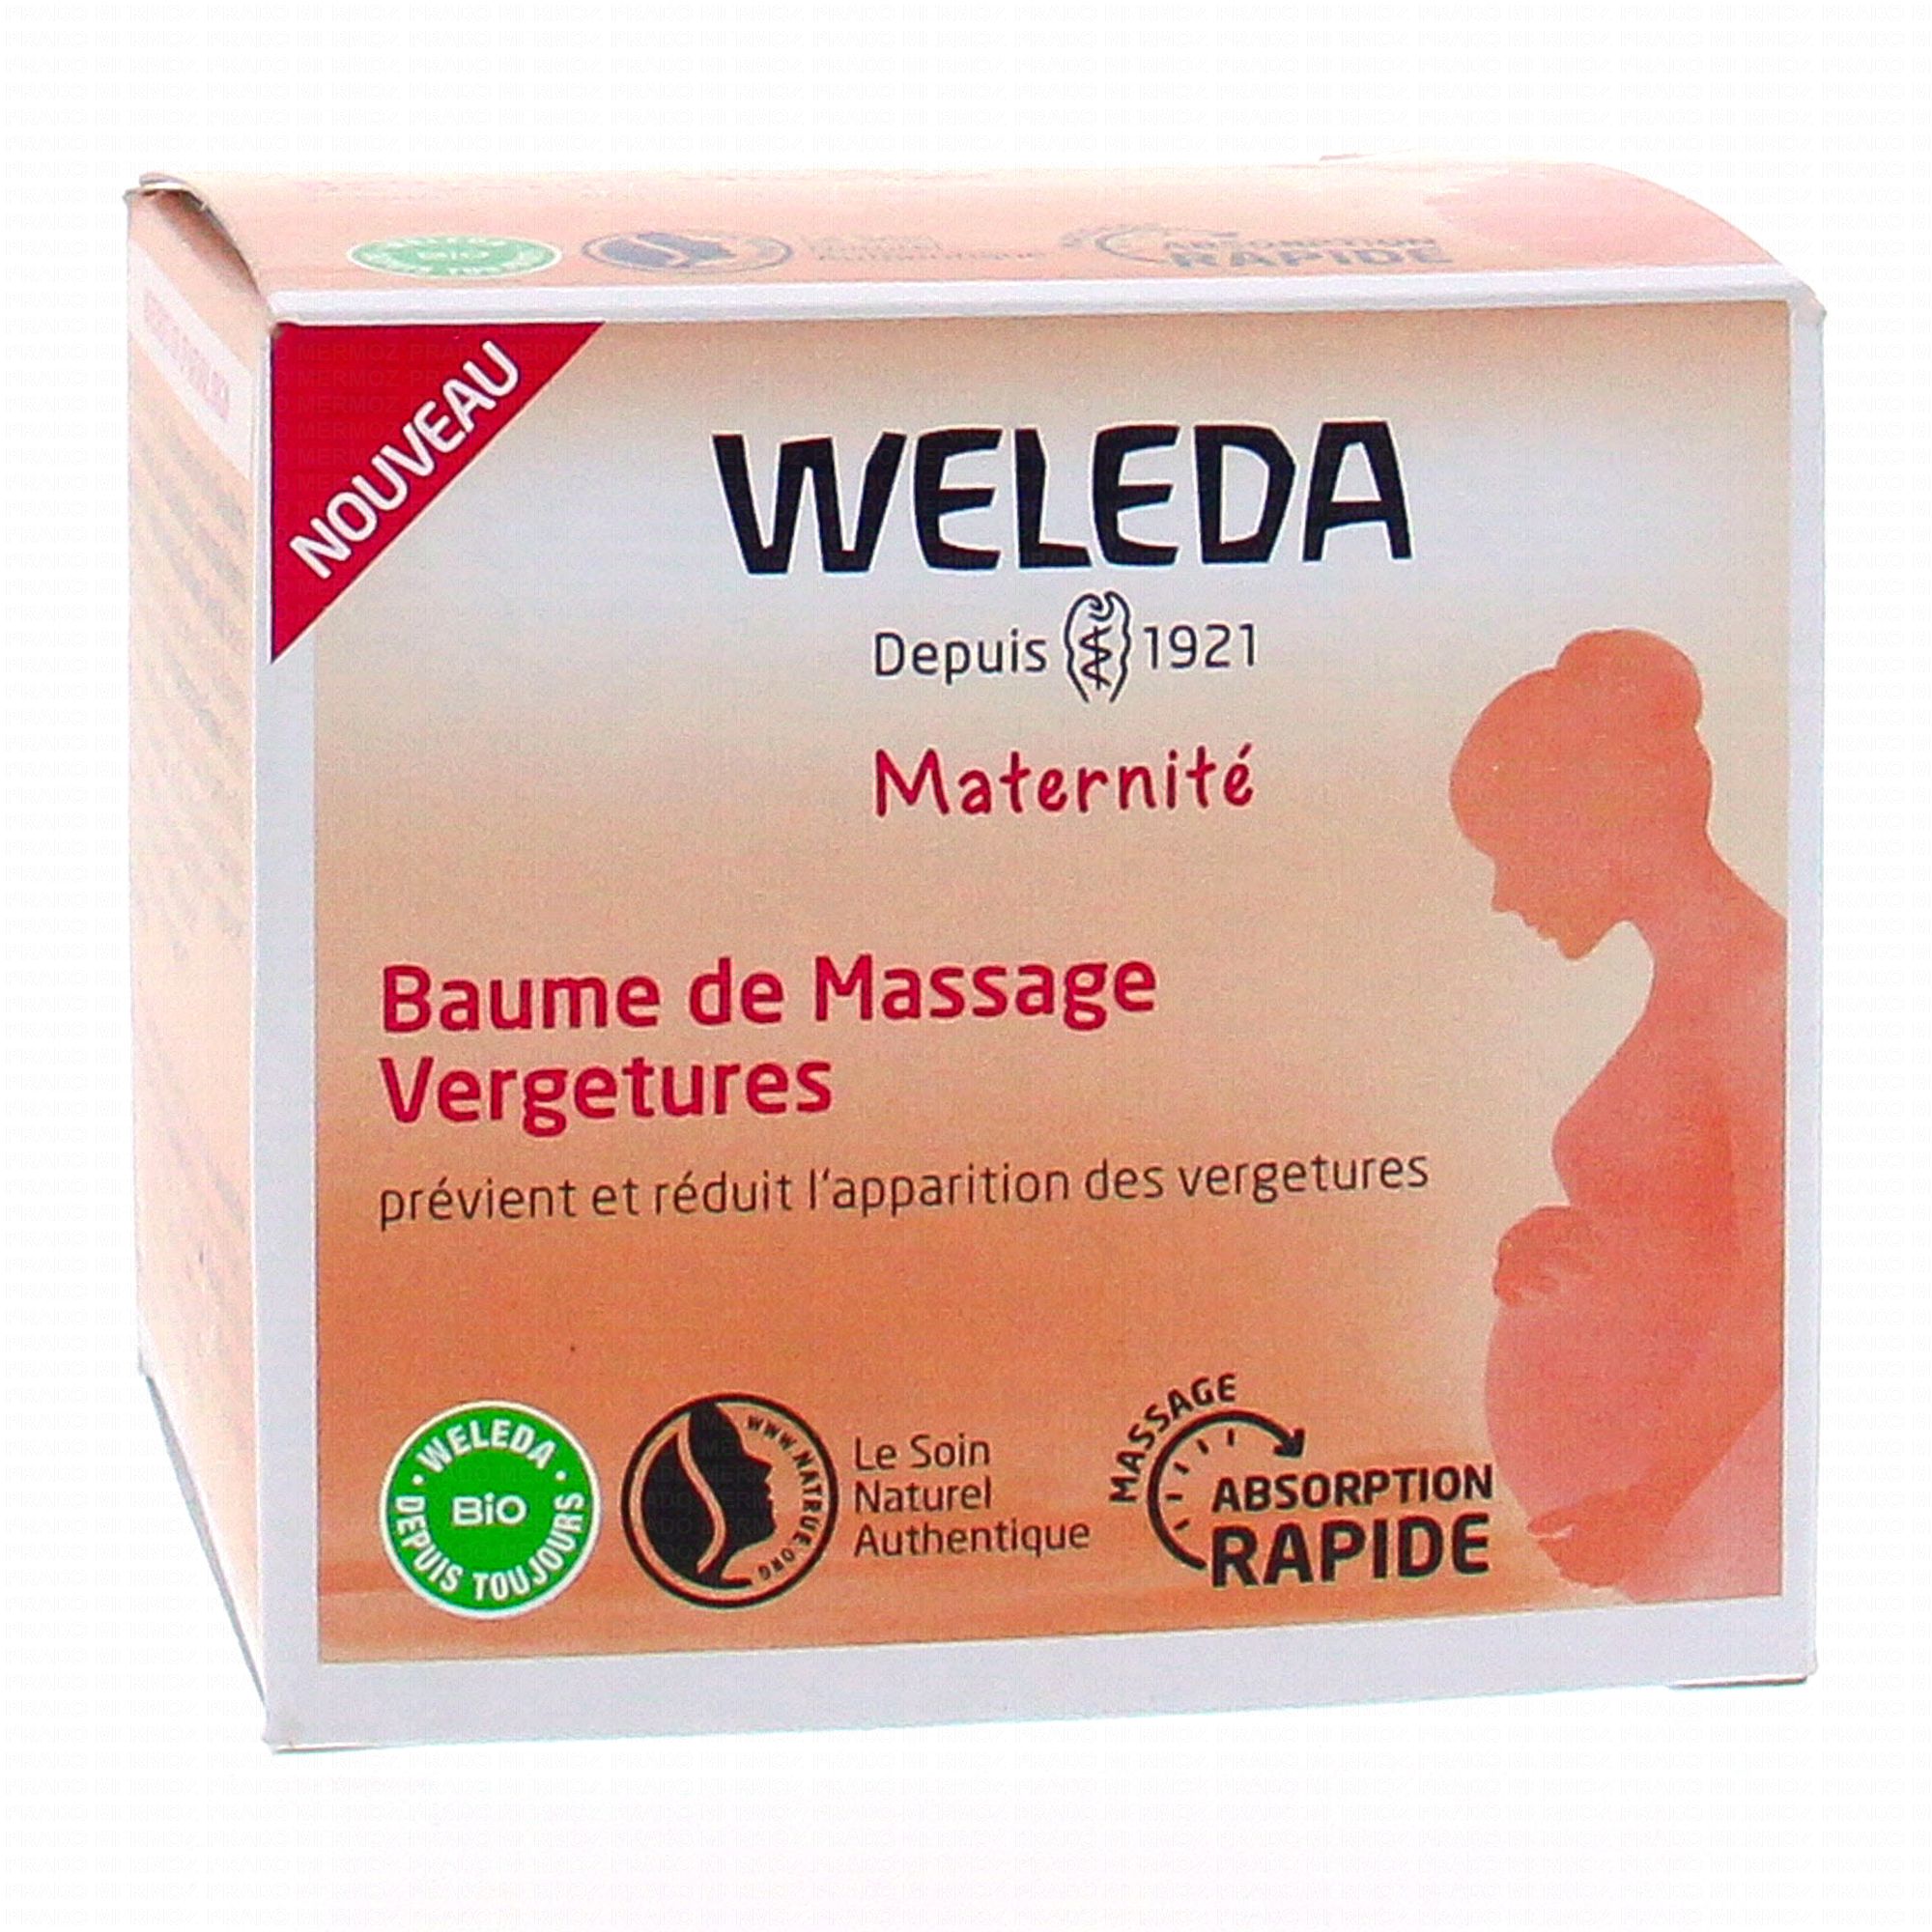 WELEDA Maternité - Baume de massage vergetures 150ml - Parapharmacie Prado  Mermoz